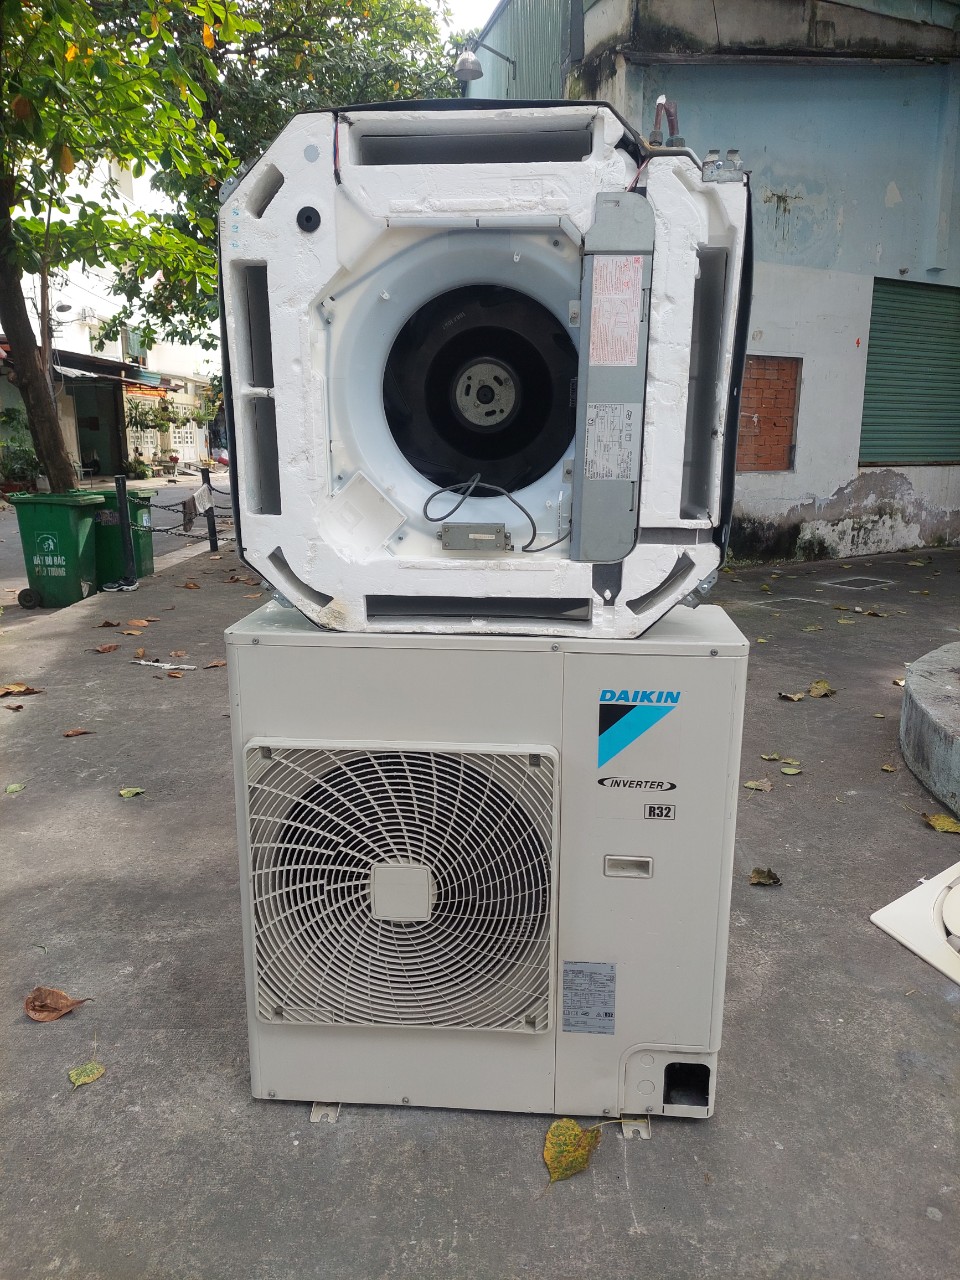 Thu Mua Máy Lạnh Đồng Nai - Máy lạnh qua sử dụng là một đơn vị chuyên về dịch vụ thu mua máy lạnh cũ tại Đồng Nai.